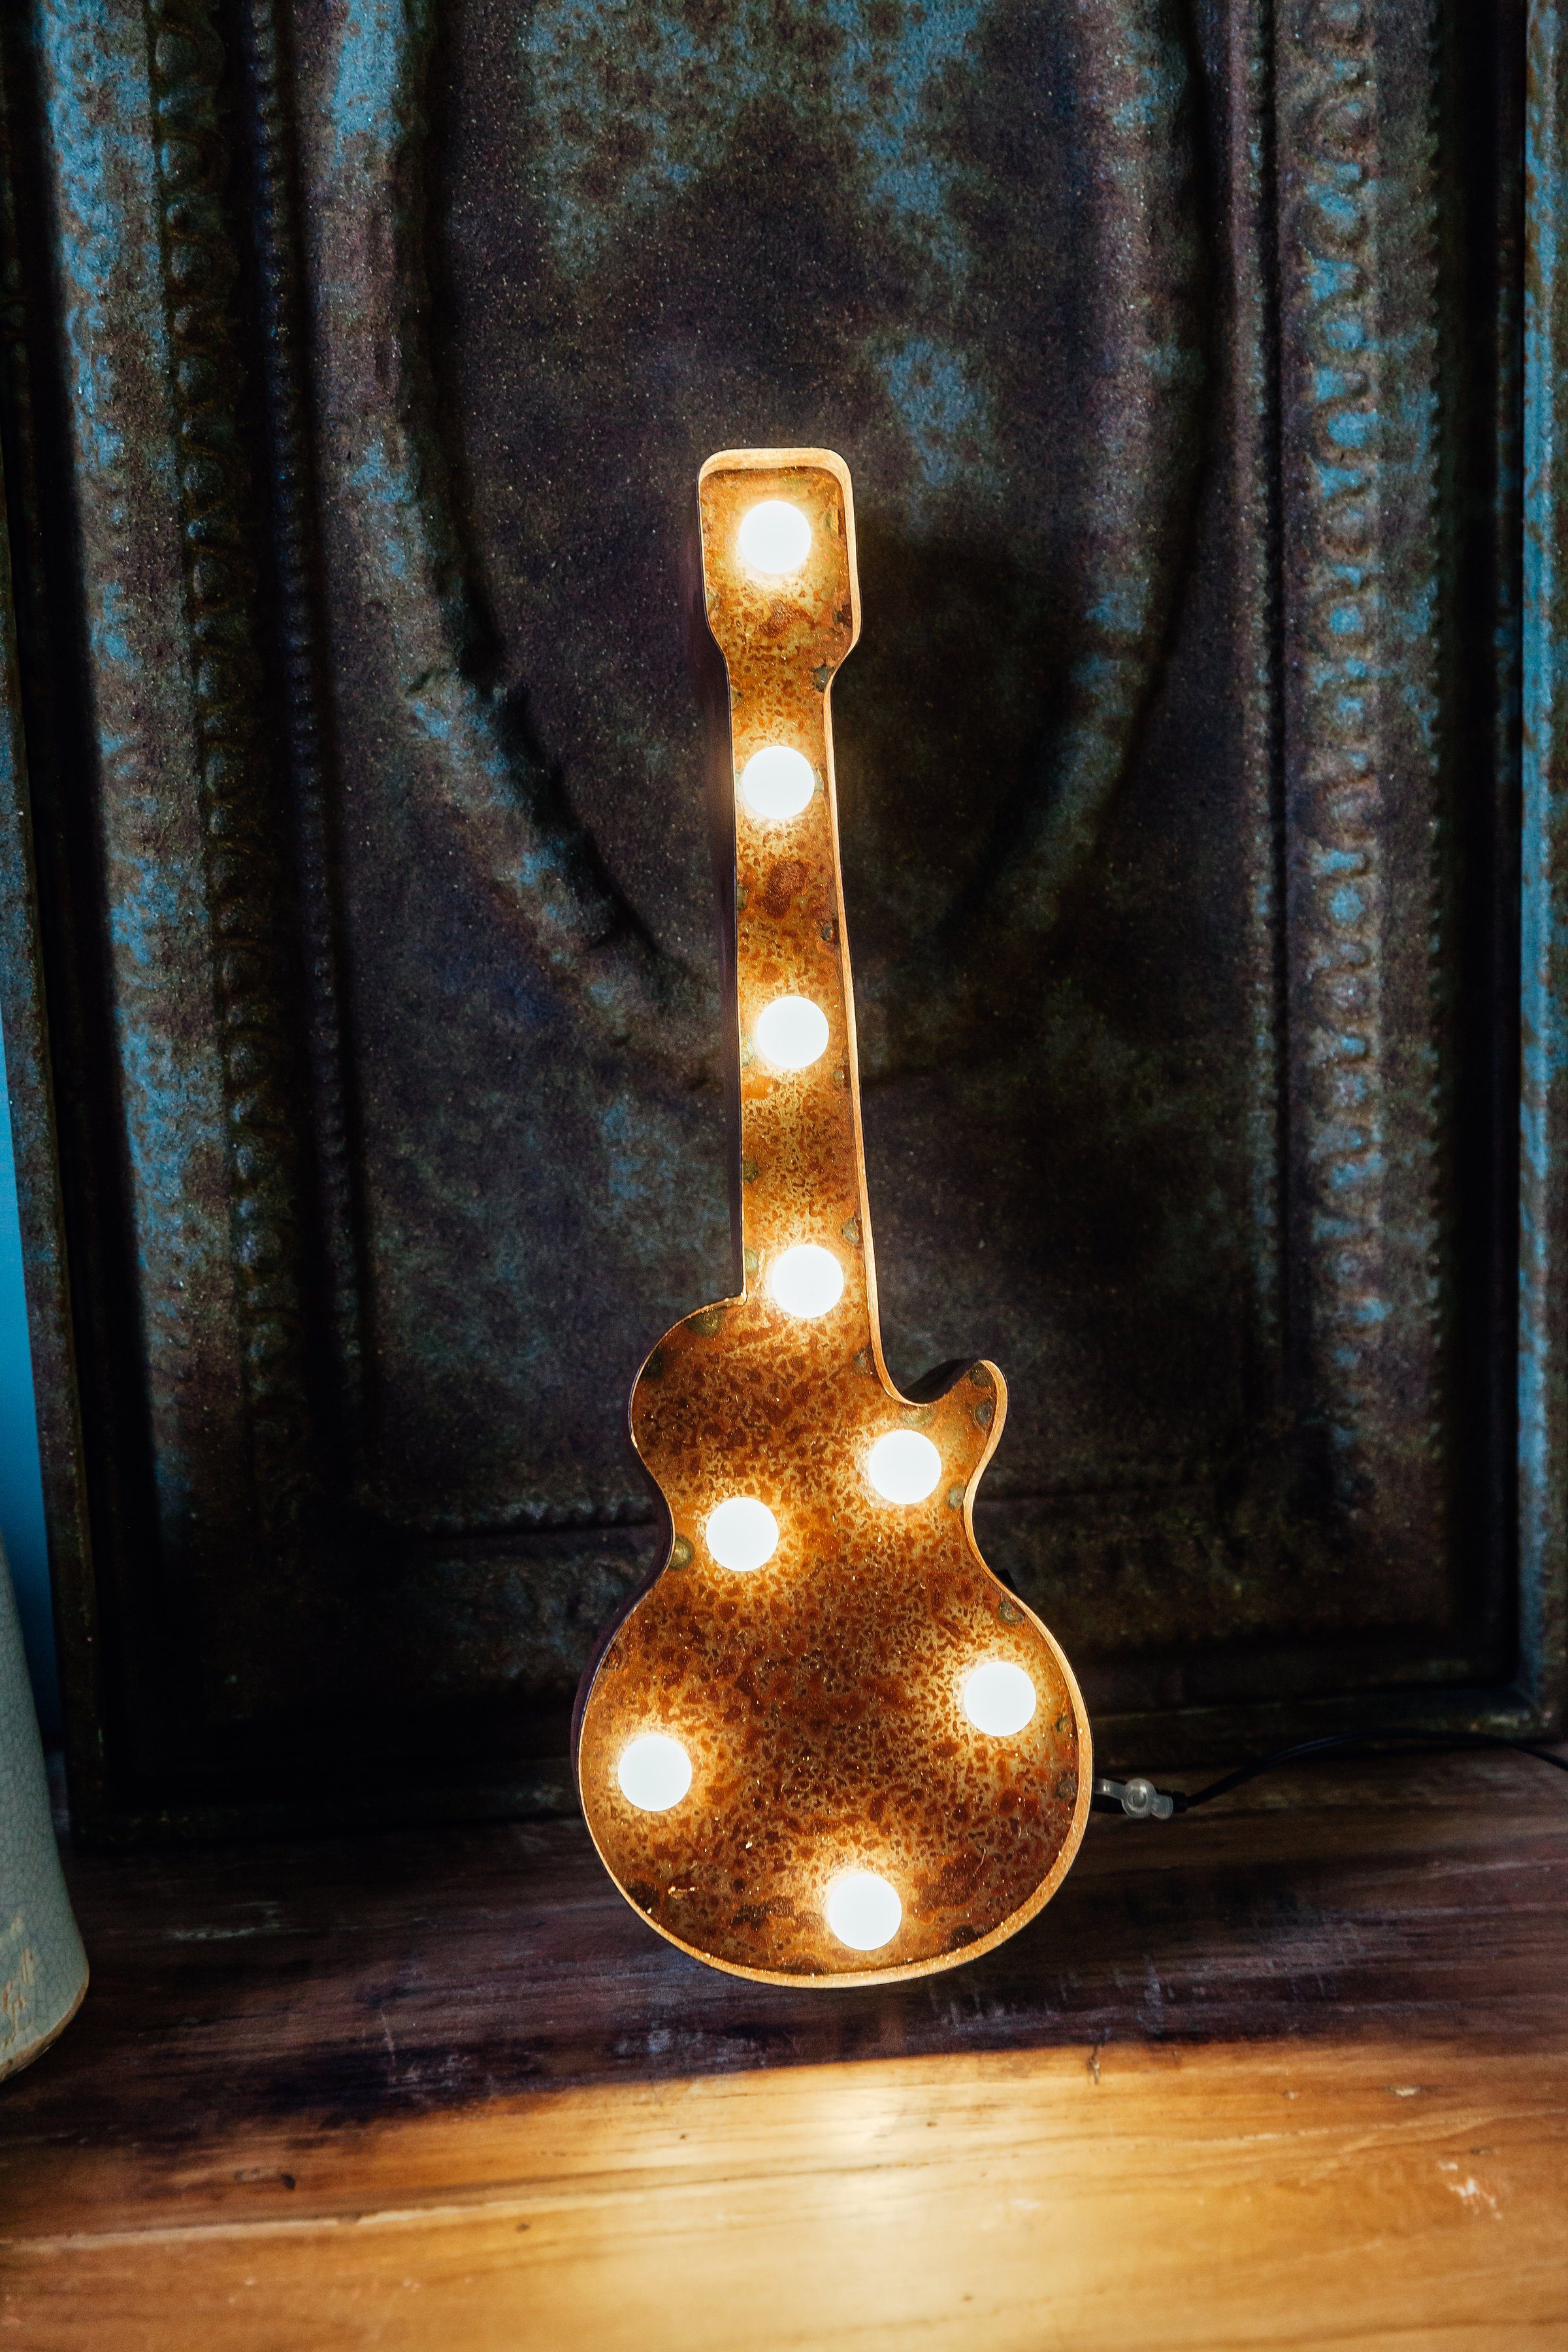 Tischlampe braun fest Warmweiß, - Old Guitar, Wandlampe, cm LED Old LIGHTS Guitar 38x13 integriert, LEDs LED MARQUEE mit festverbauten 9 Dekolicht